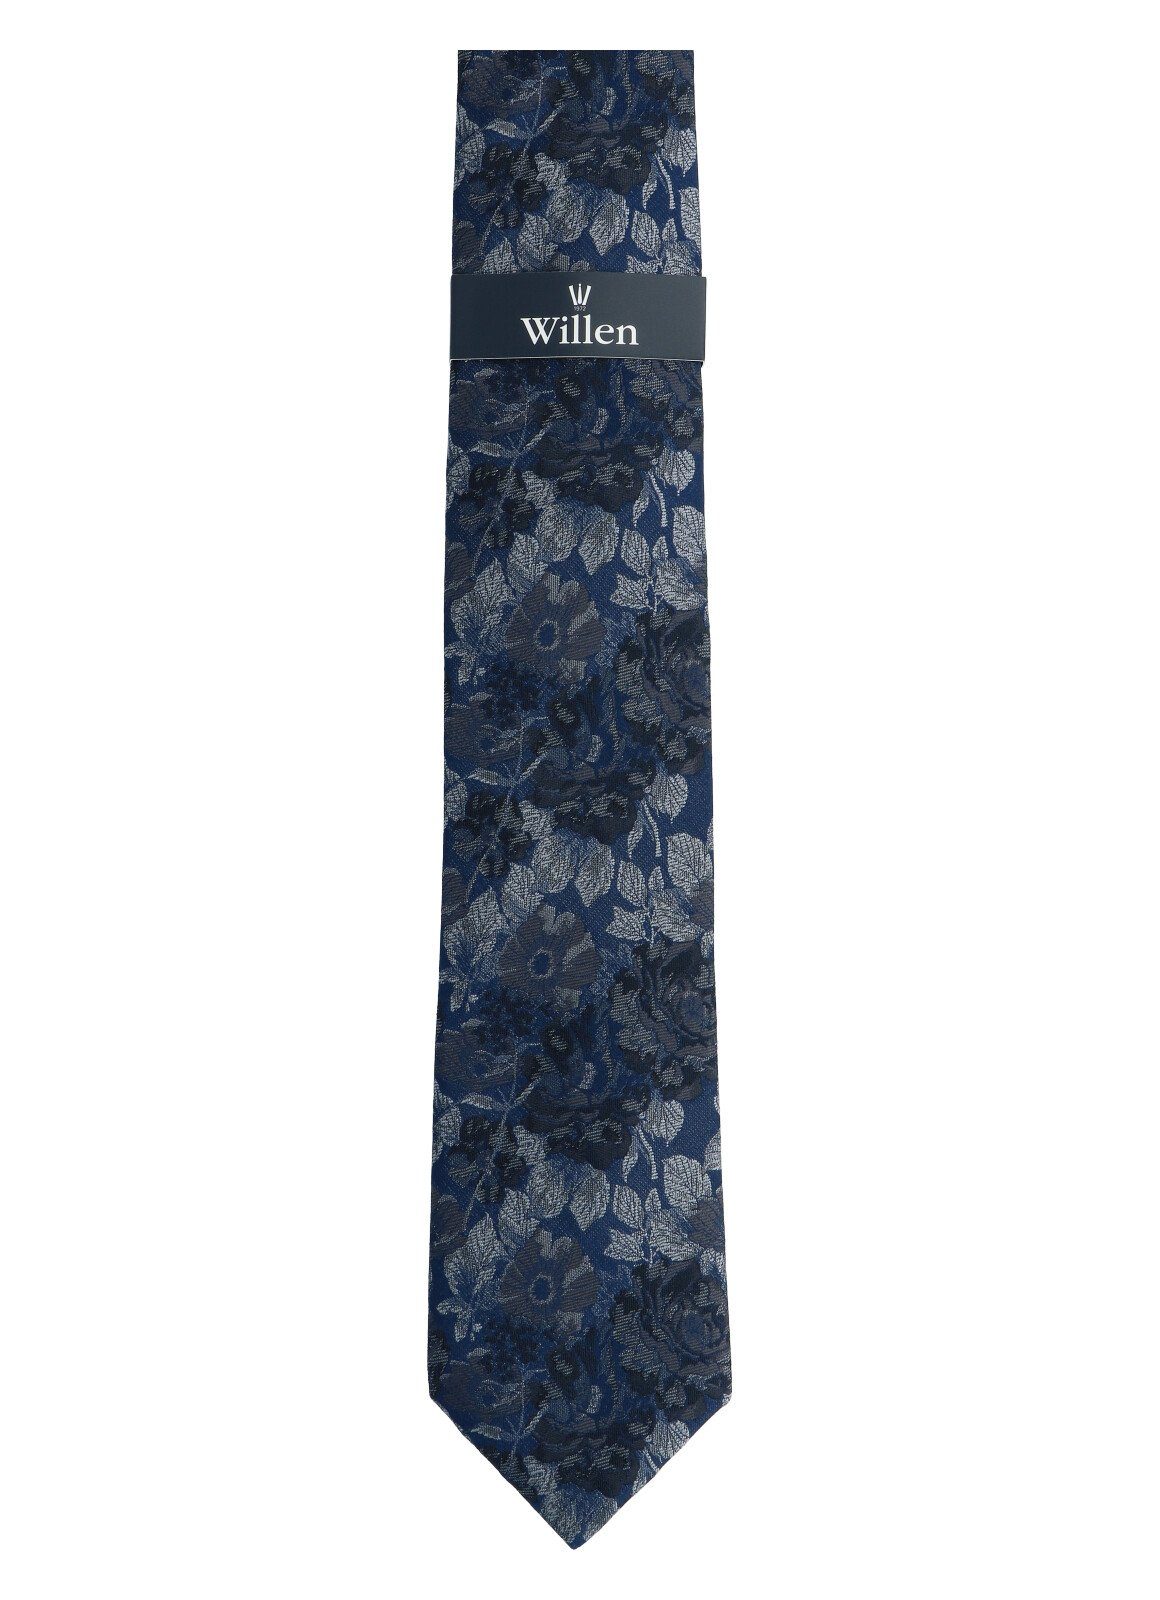 Krawatte/Fliege Hemd & grau Weste, WILLEN